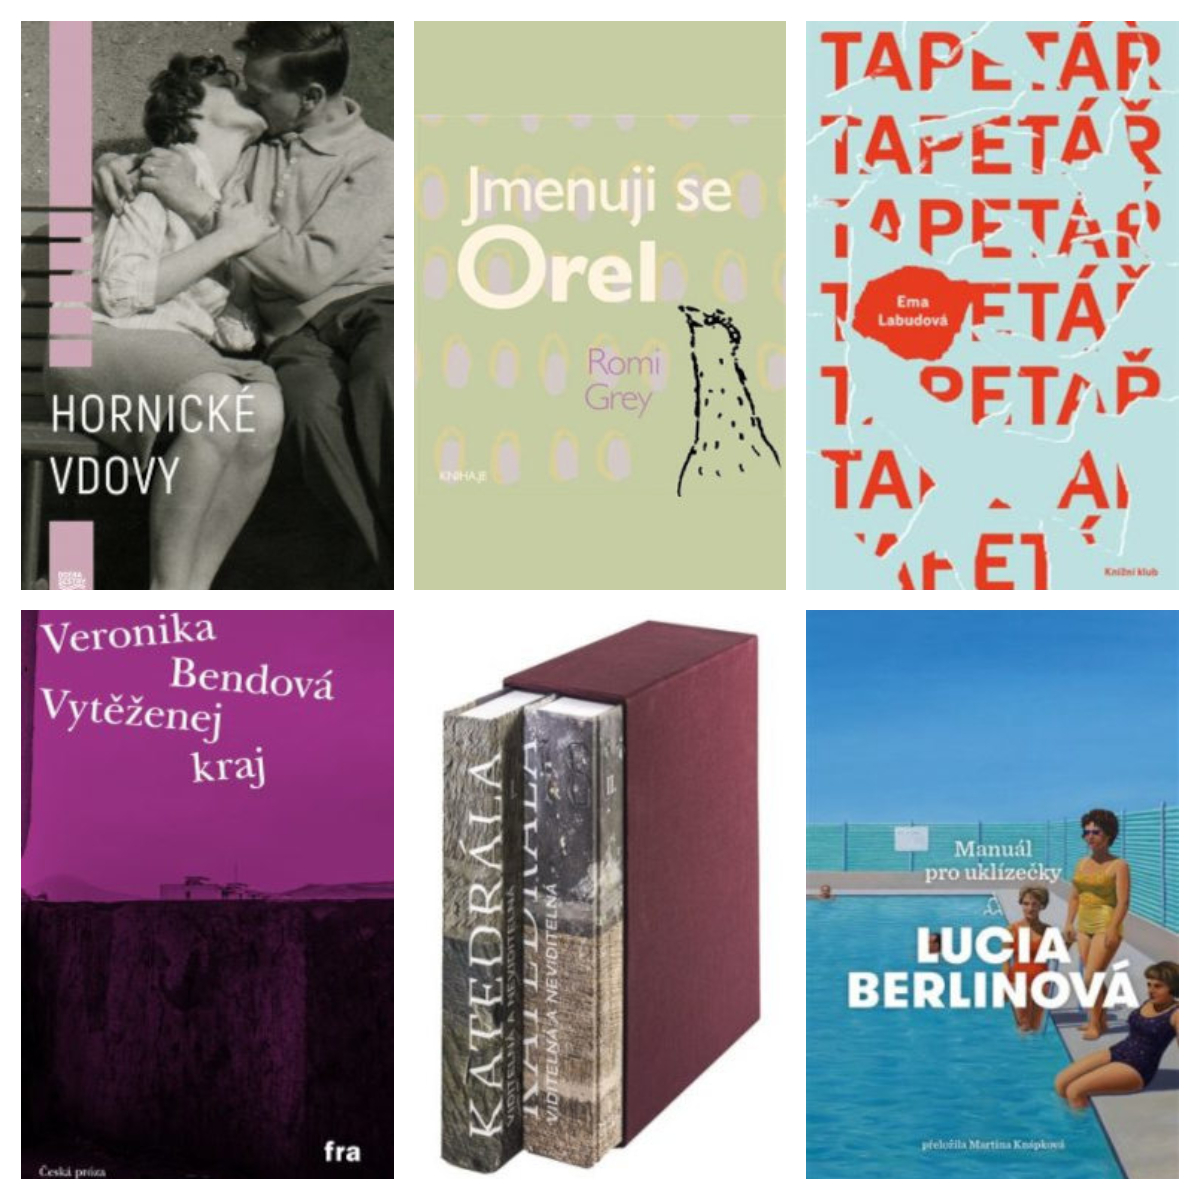 Zde představujeme obálky šesti knih, které byly letos nominované na ceny Magnesia Litera a napsaly je ženy. Ačkoliv nezvítězily, stojí za pozornost. Zleva shora: <b>Hornické vdovy</b> Kamily Hladké, <b>Jmenuji se Orel</b> Romi Grey, <b>Tapetář</b> Emy Labudové, <b>Vytěžený kraj</b> Veroniky Bendové, <b>Katedrála viditelná a neviditelná</b> Jany Maříkové-Kubkové a kolektivu a český překlad <b>Manuálu pro uklízečky</b> Lucii Berlinové v překladu Martiny Knápkové